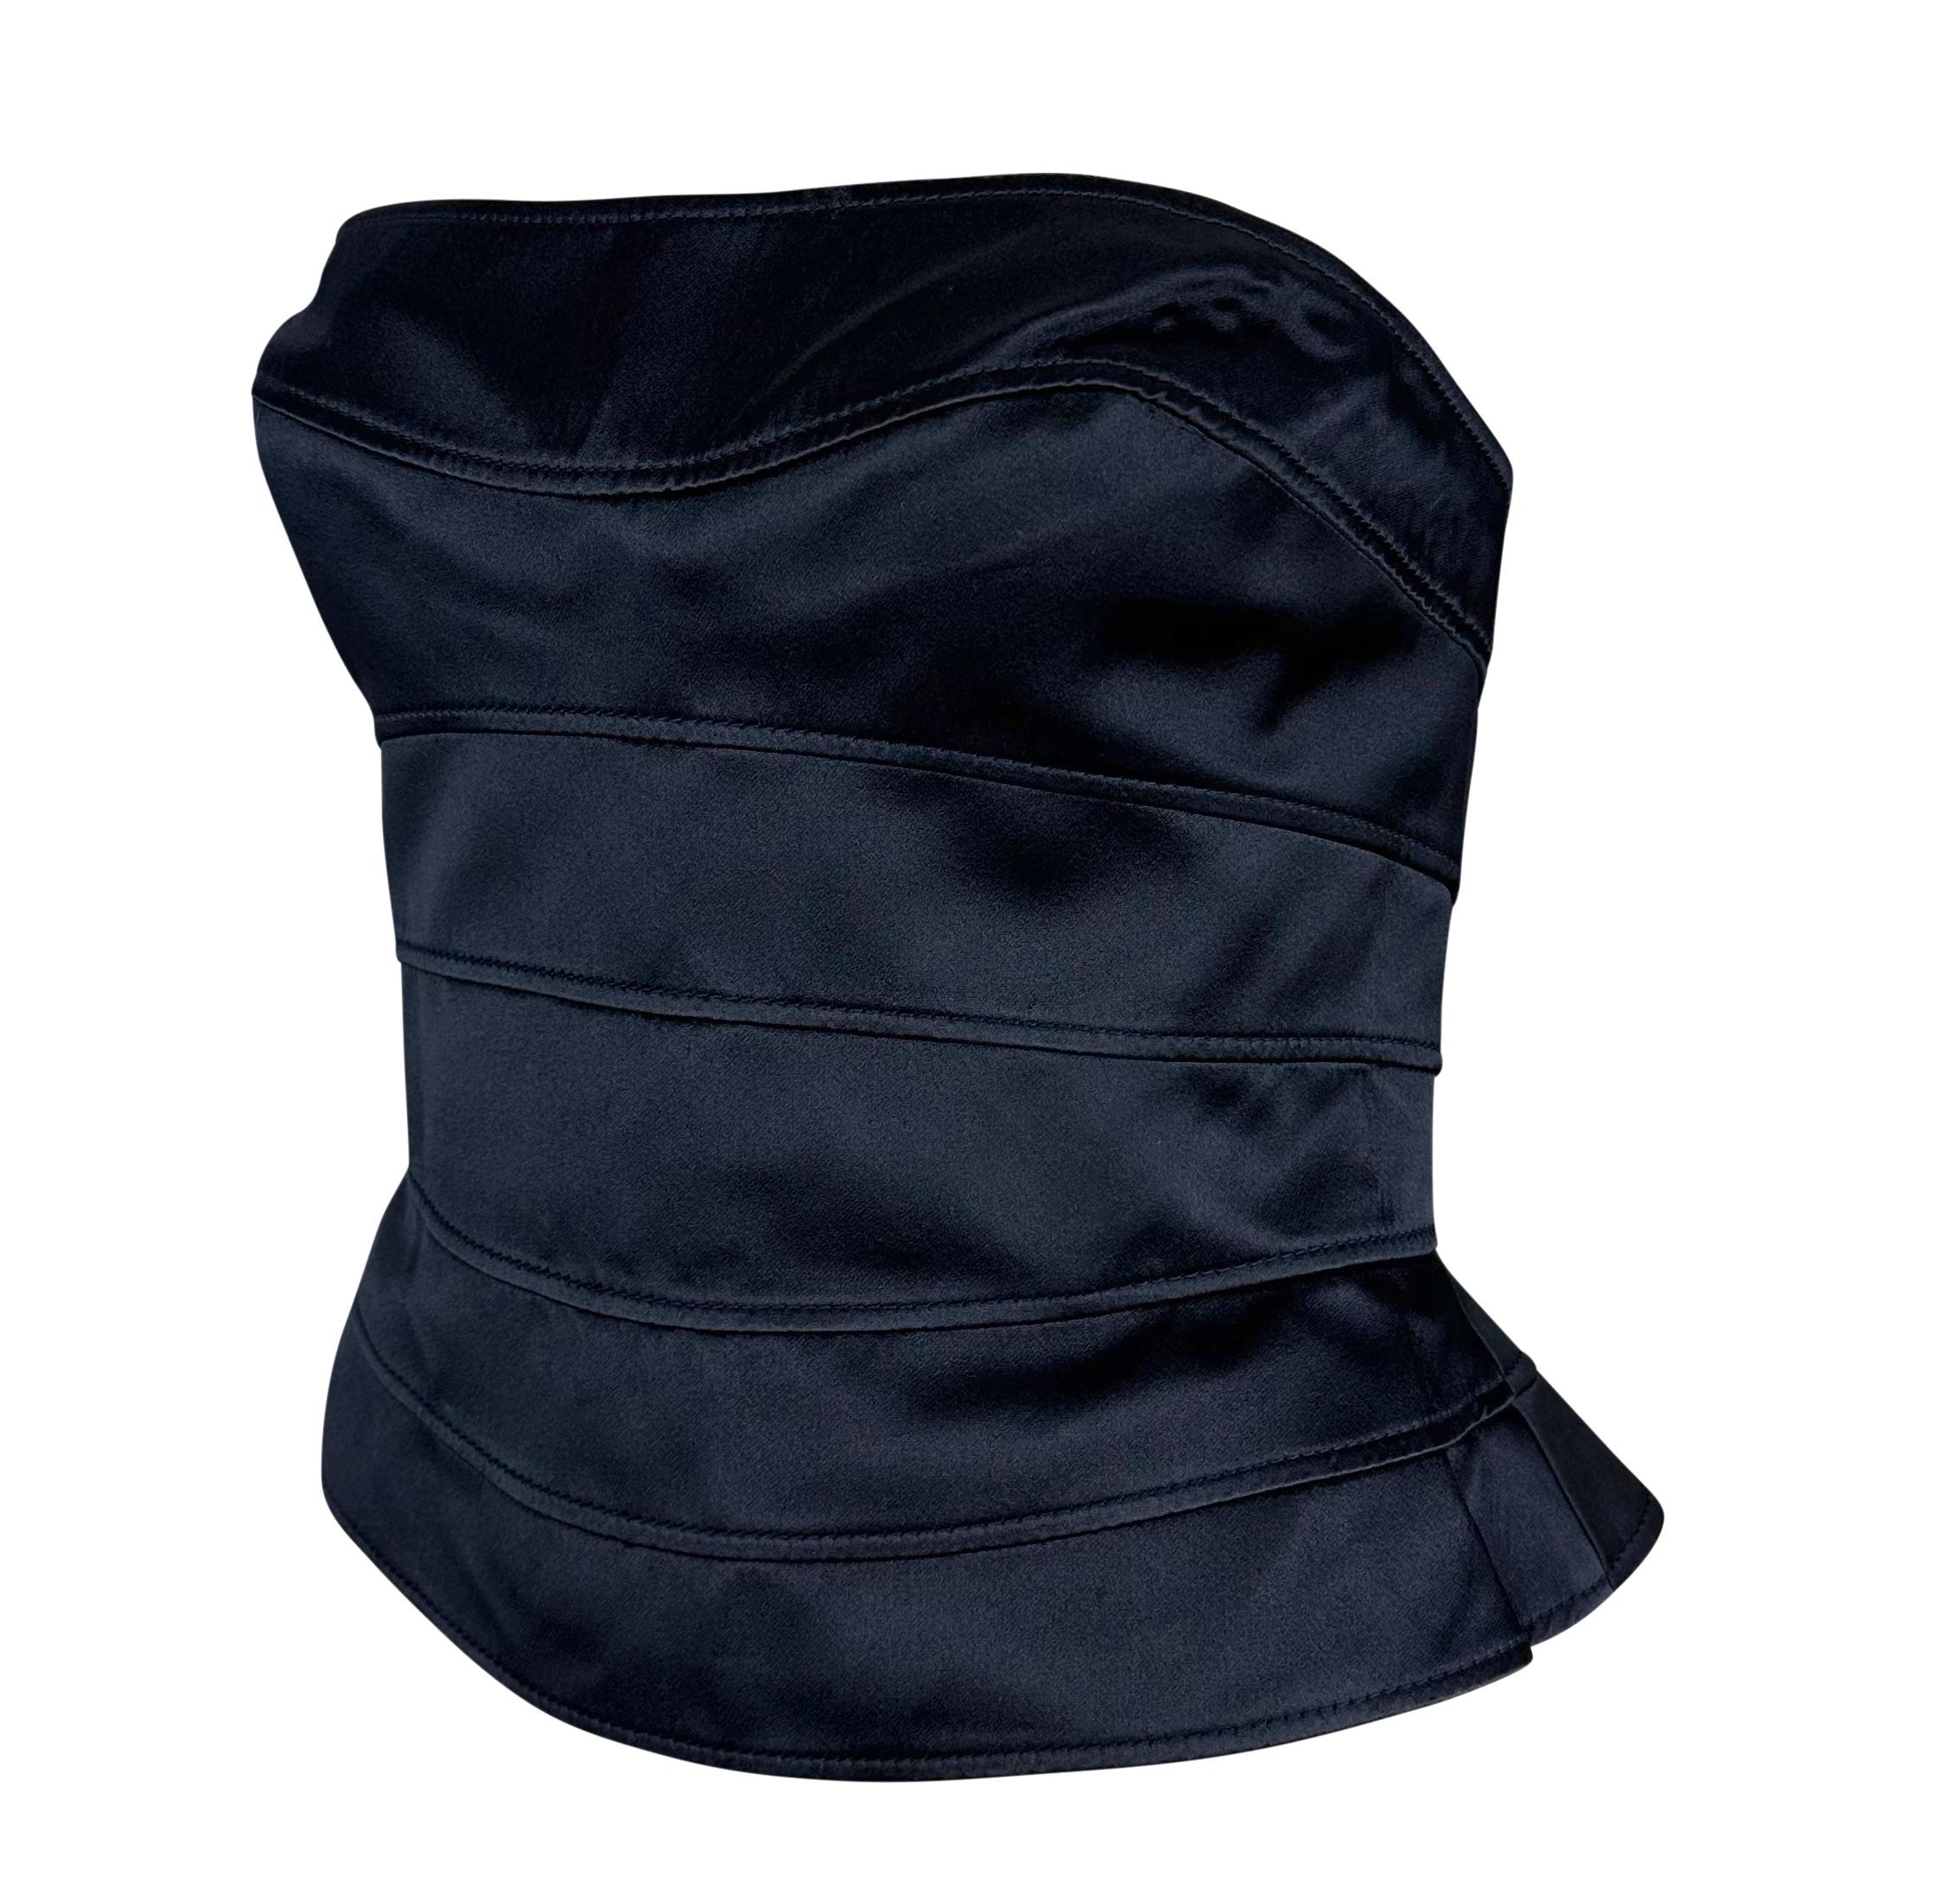 Voici un fabuleux top corset sans bretelles en satin de soie noir Thierry Mugler, conçu par Manfred Mugler. Datant des années 1990, ce superbe haut est entièrement constitué de panneaux horizontaux en satin de soie marine. Cette création de Thierry